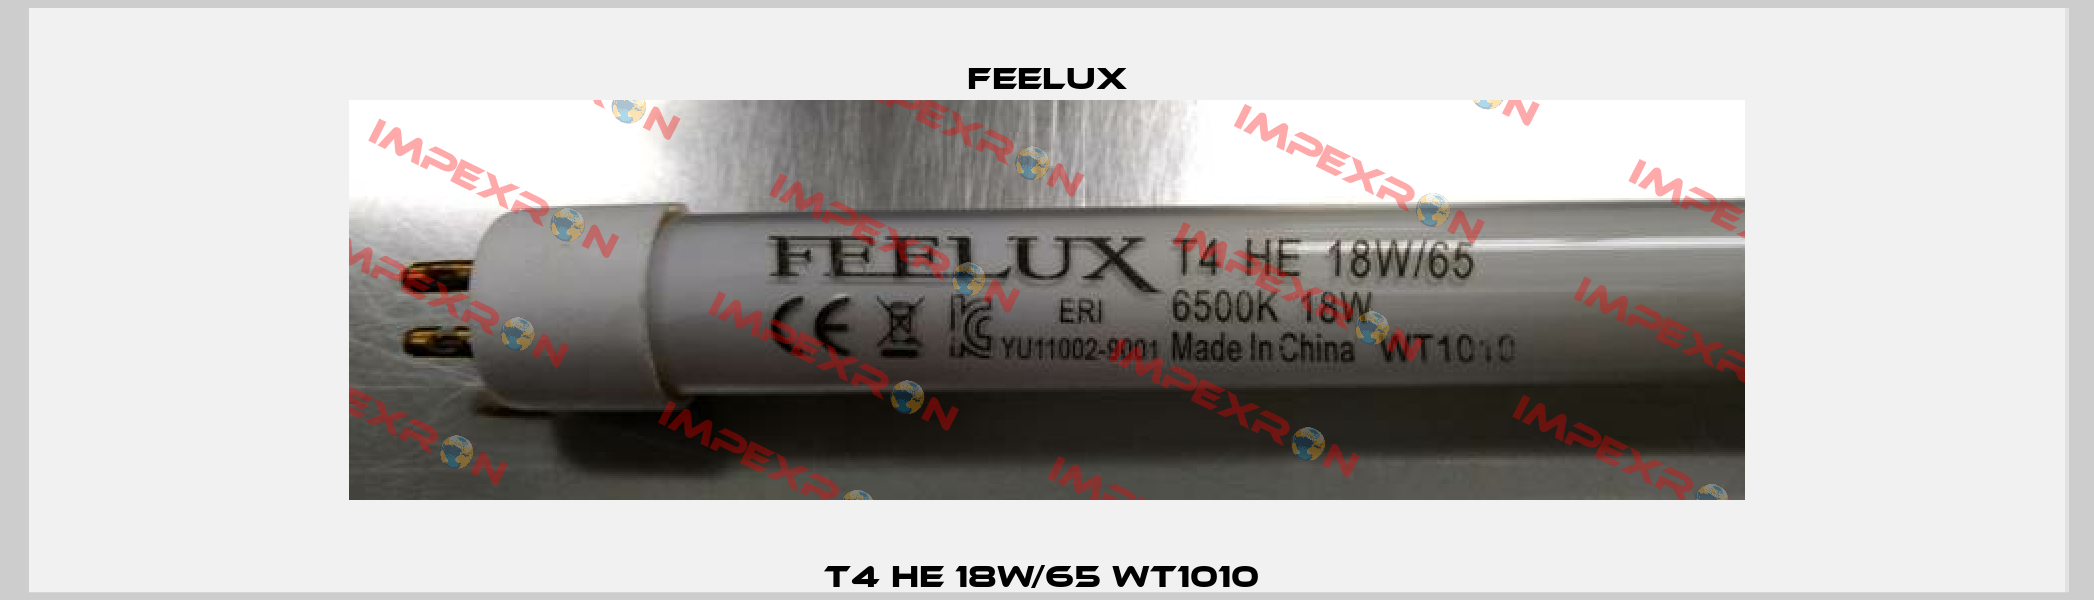 T4 HE 18W/65 WT1010  Feelux